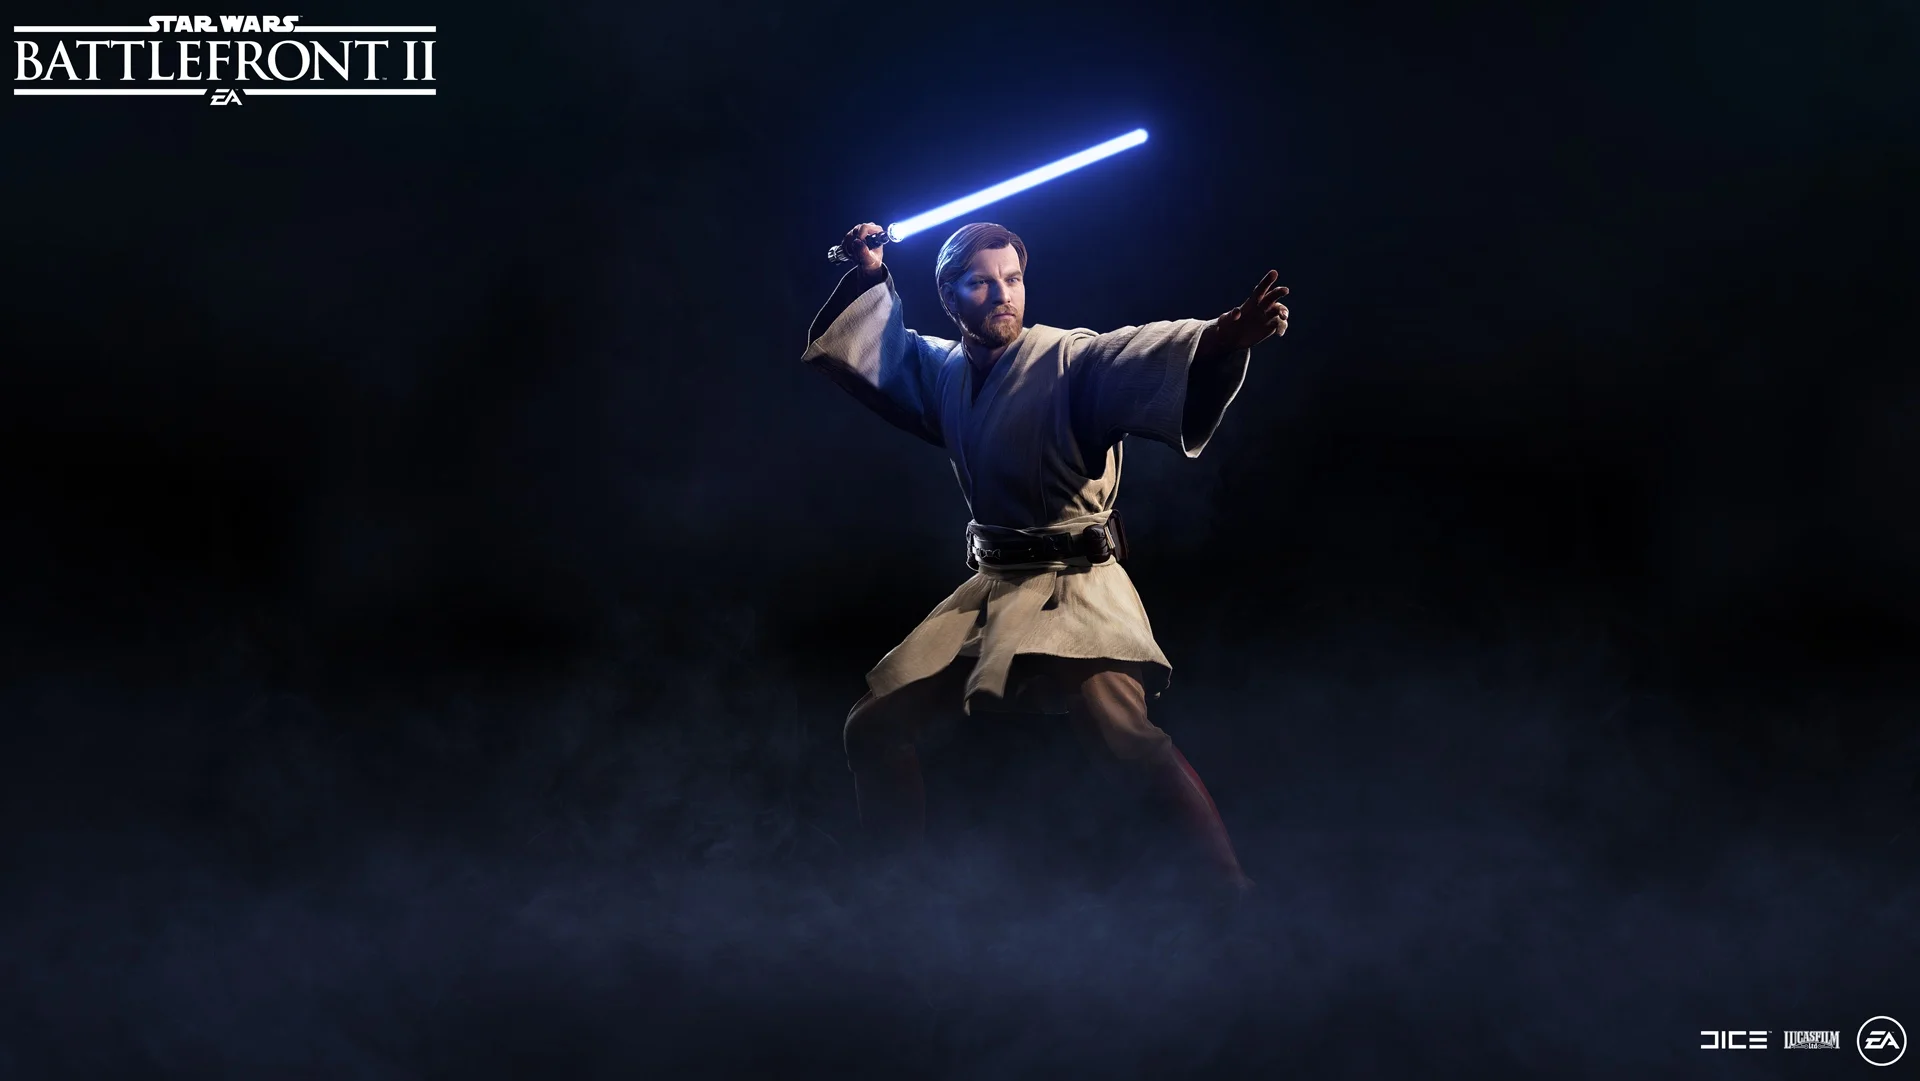 Генерал Кеноби появится в Star Wars: Battlefront II через неделю - фото 1